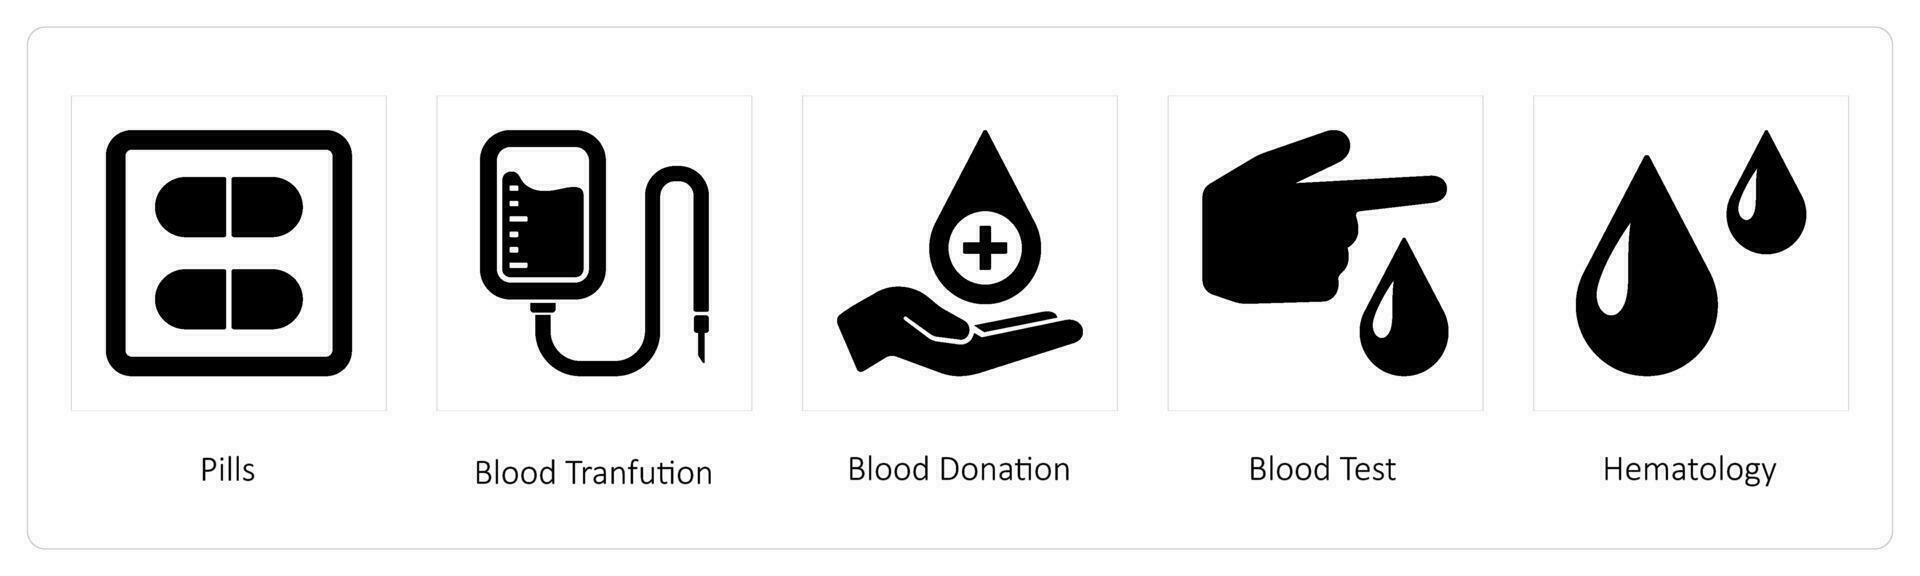 biljard, blod förvandling, blod donation vektor